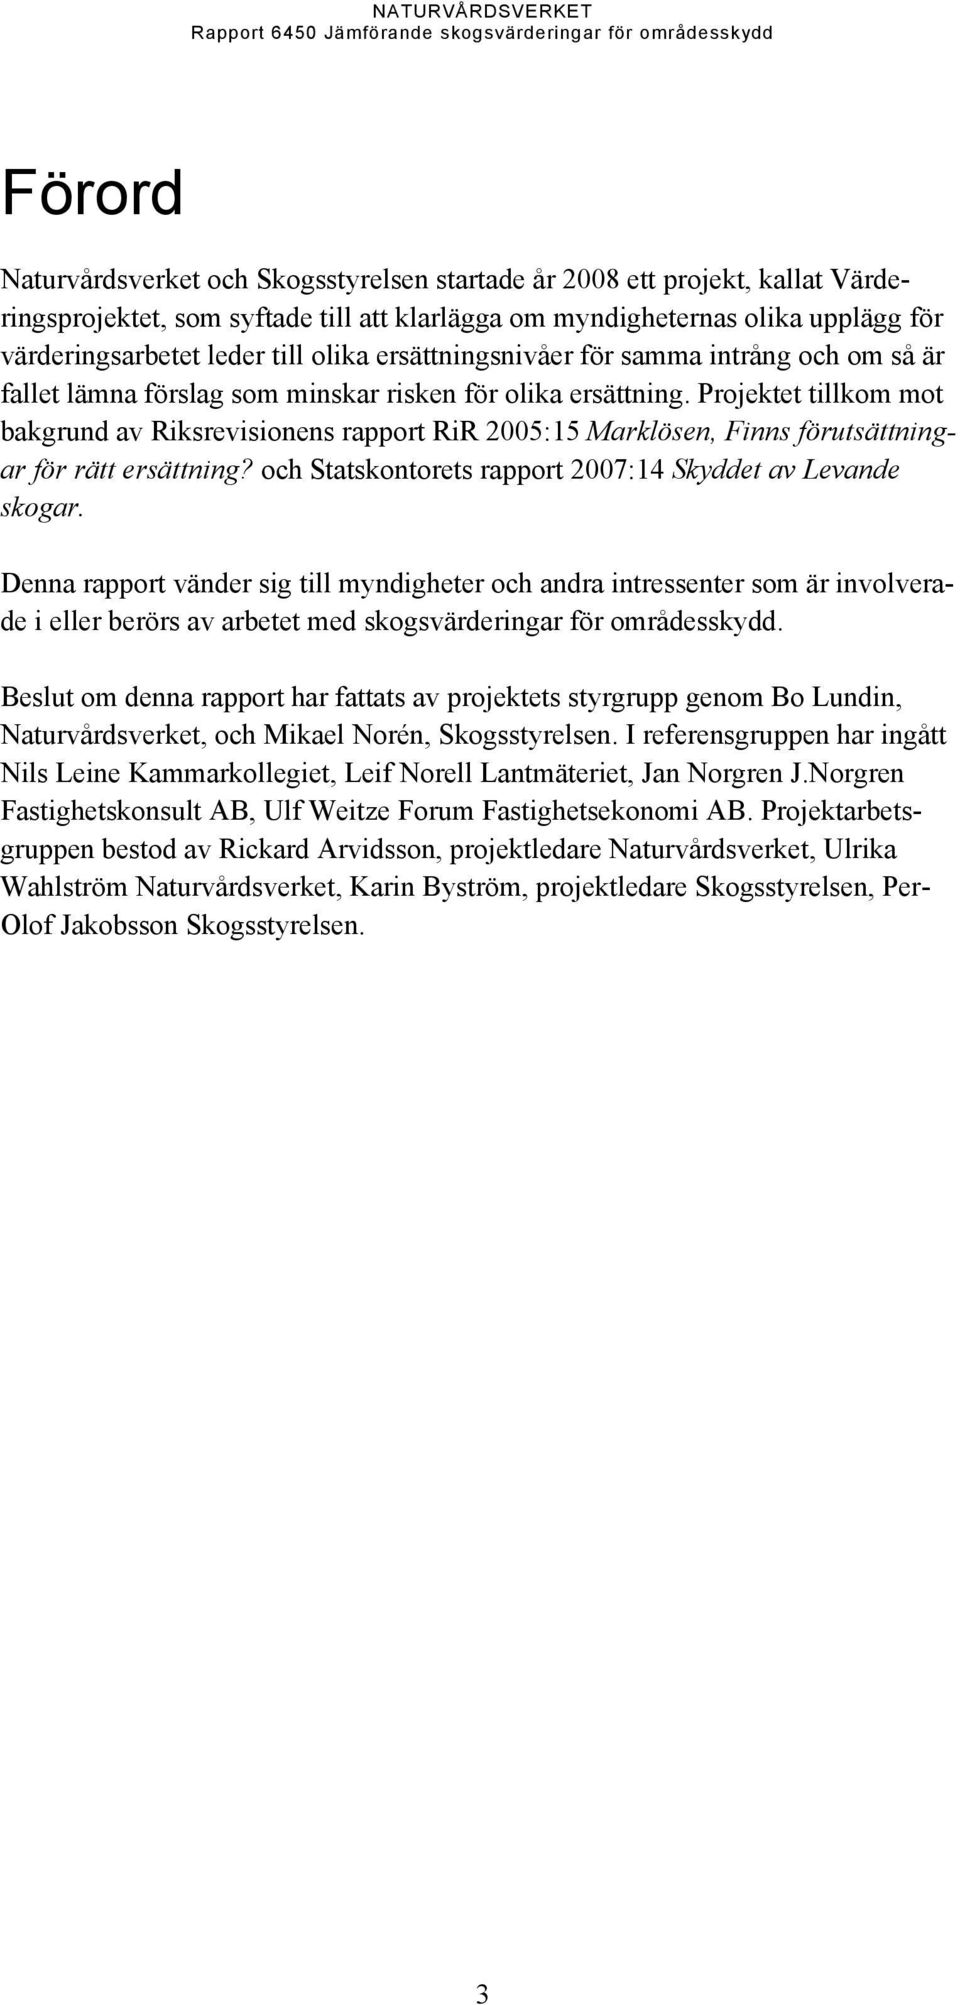 Projetet tillom mot bagrund av Risrevisionens rapport RiR 2005:15 Marlösen, Finns förutsättningar för rätt ersättning? och Statsontorets rapport 2007:14 Syddet av Levande sogar.